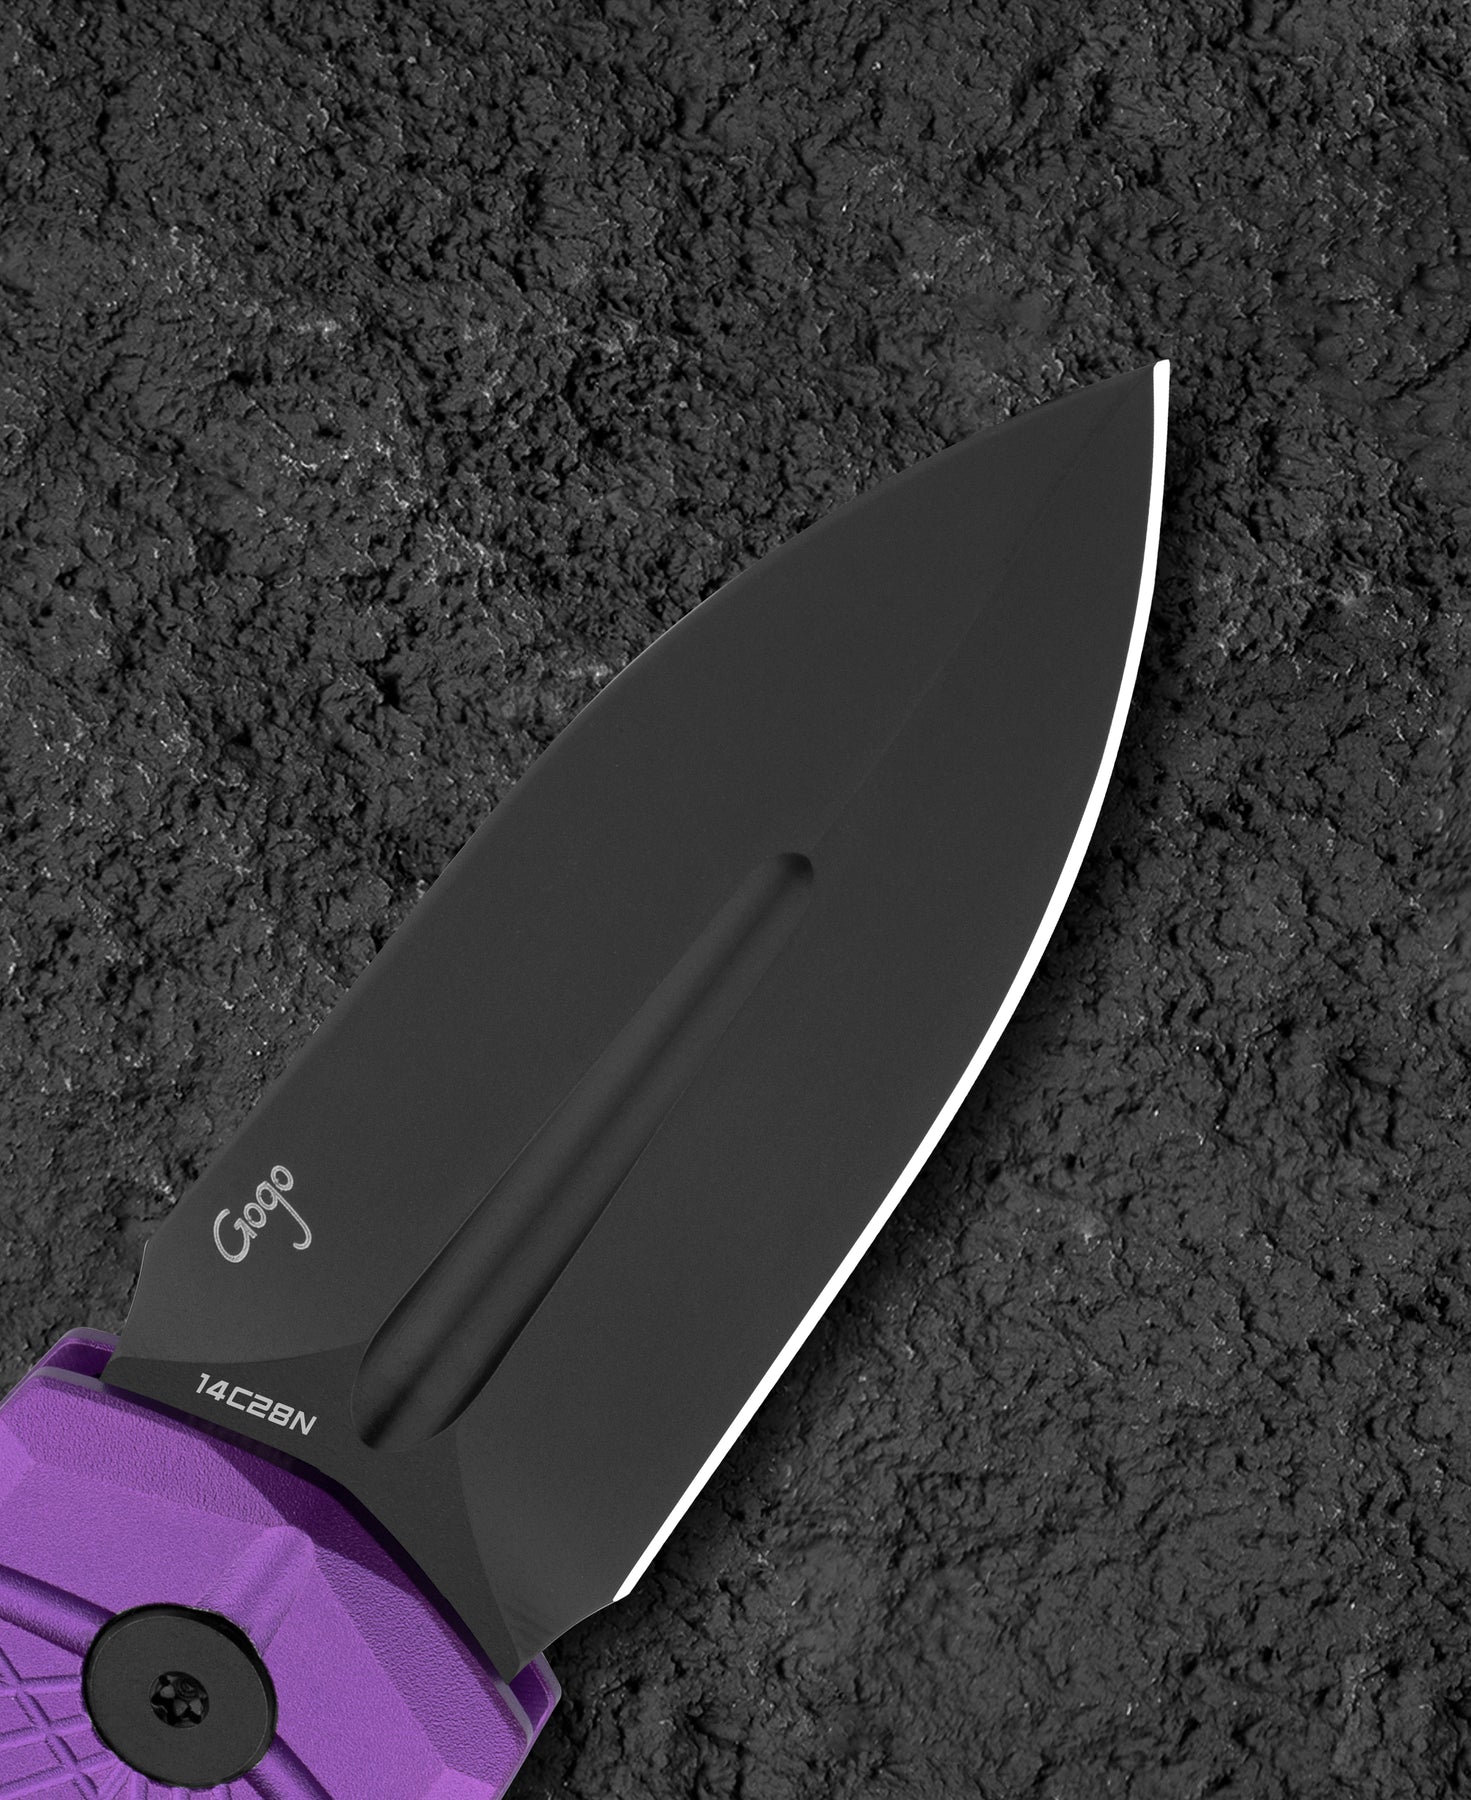 Bestech Knives QUQU 14C28N钢 铝合金柄 BG57B-5 468